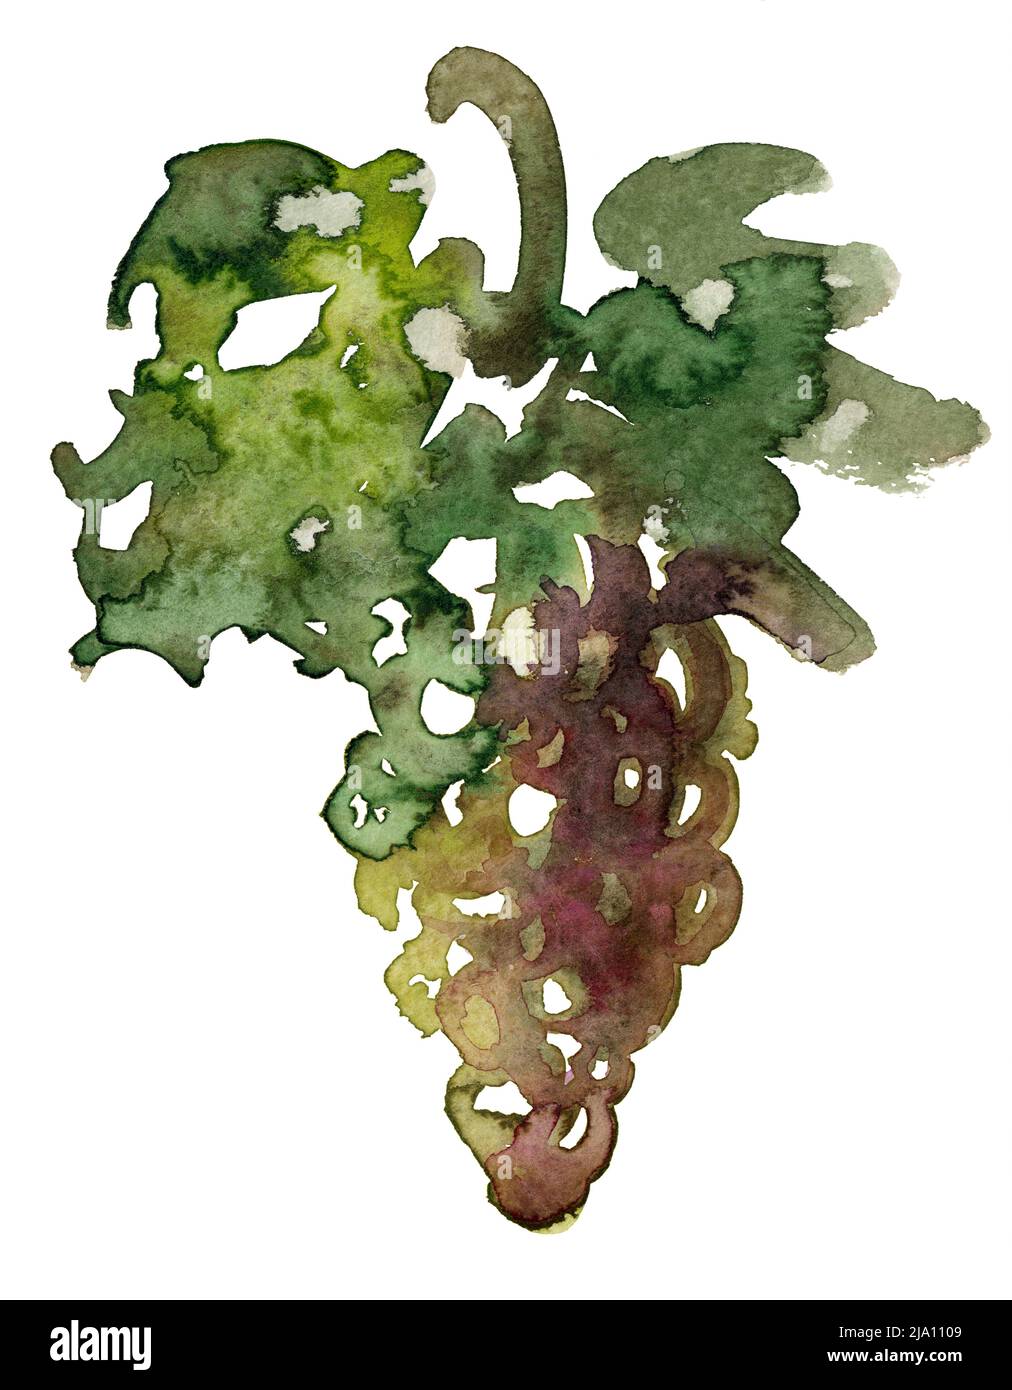 Illustration aquarelle d'un raisin de vin avec des feuilles dans le dos blanc Banque D'Images